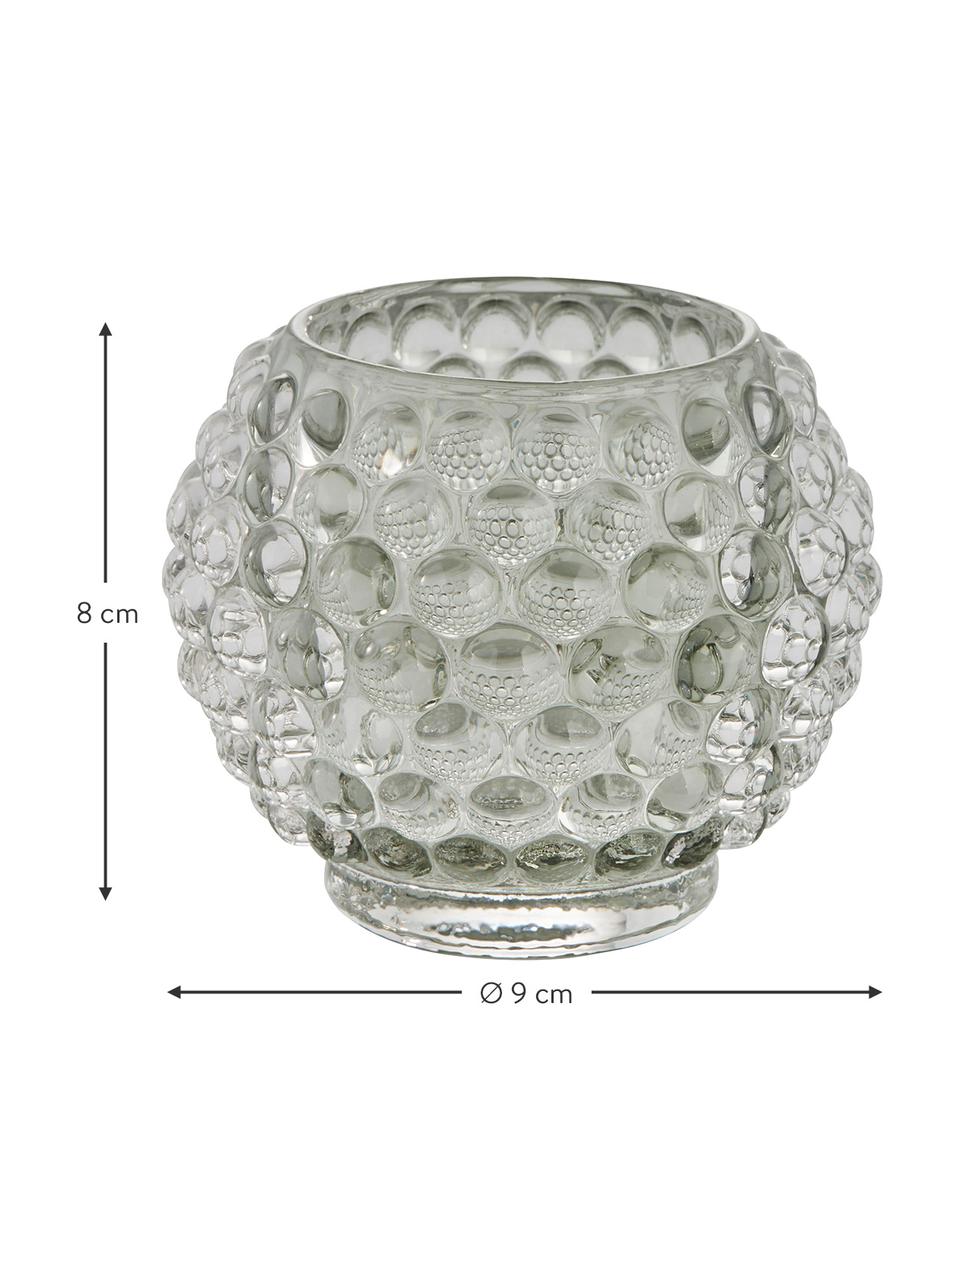 Handgefertigter Teelichthalter Doria in Hellgrau, Glas, Grau, transparent, Ø 9 x H 8 cm